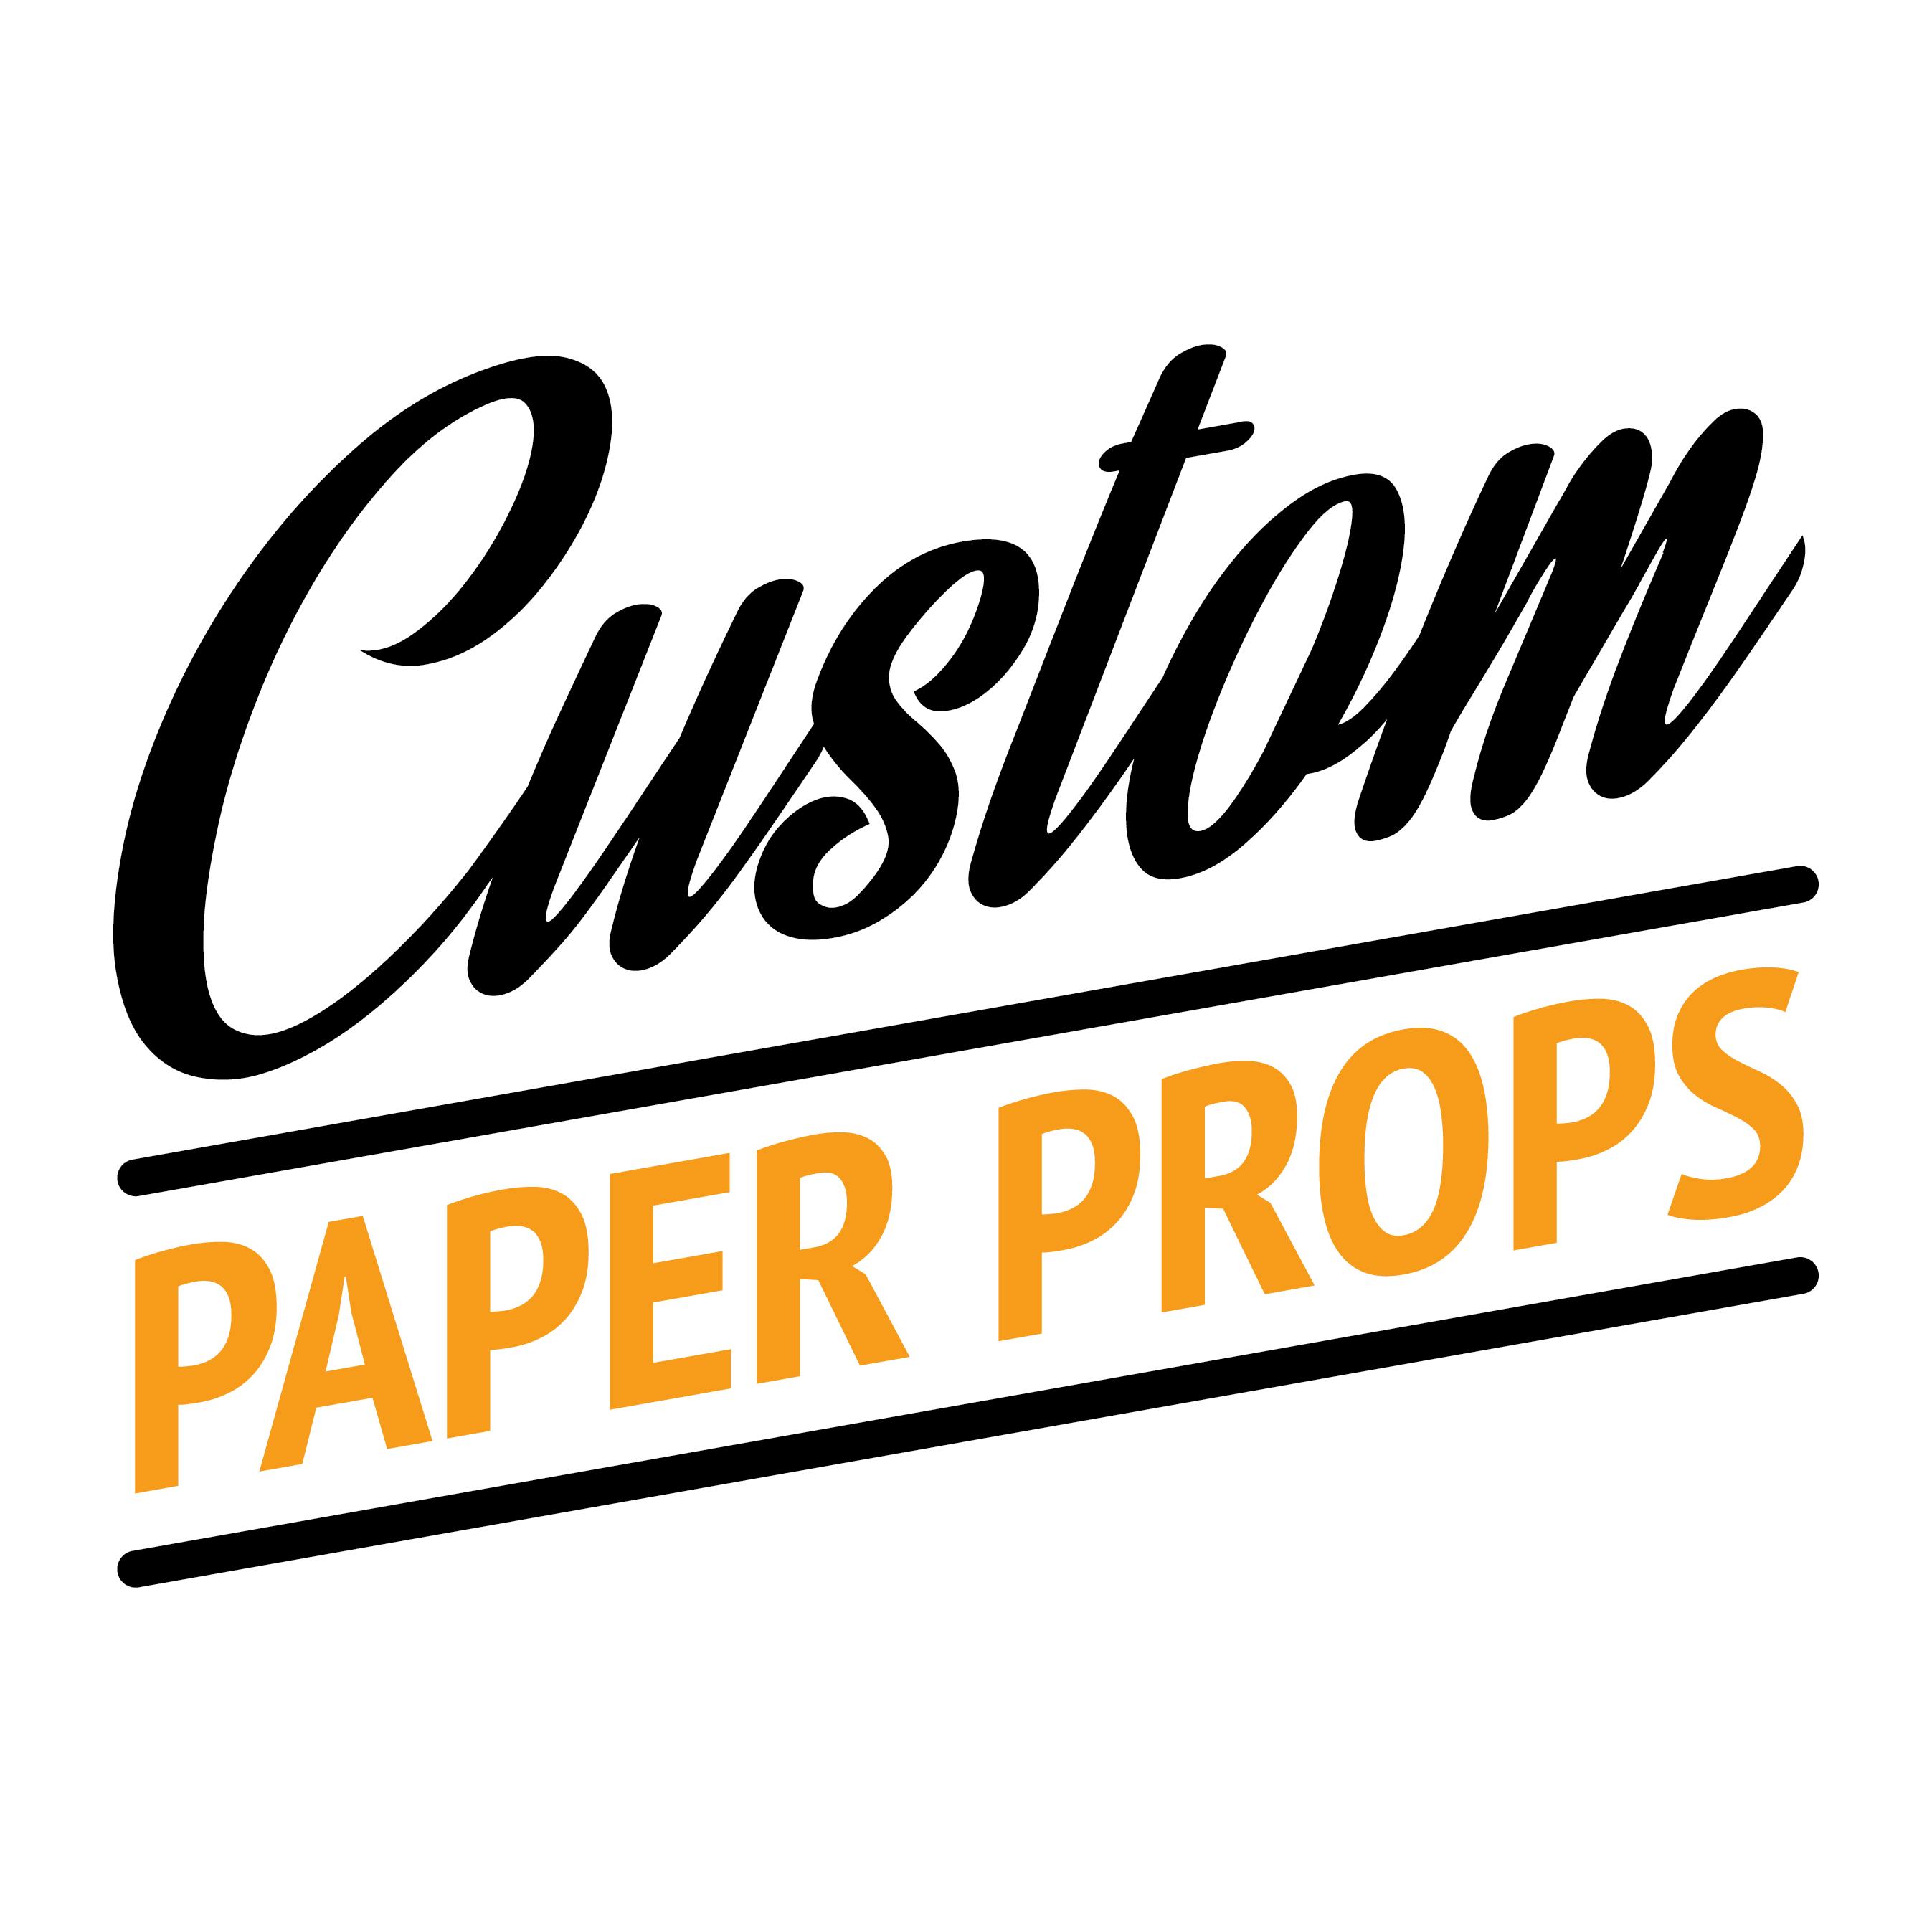 Custom Paper Props